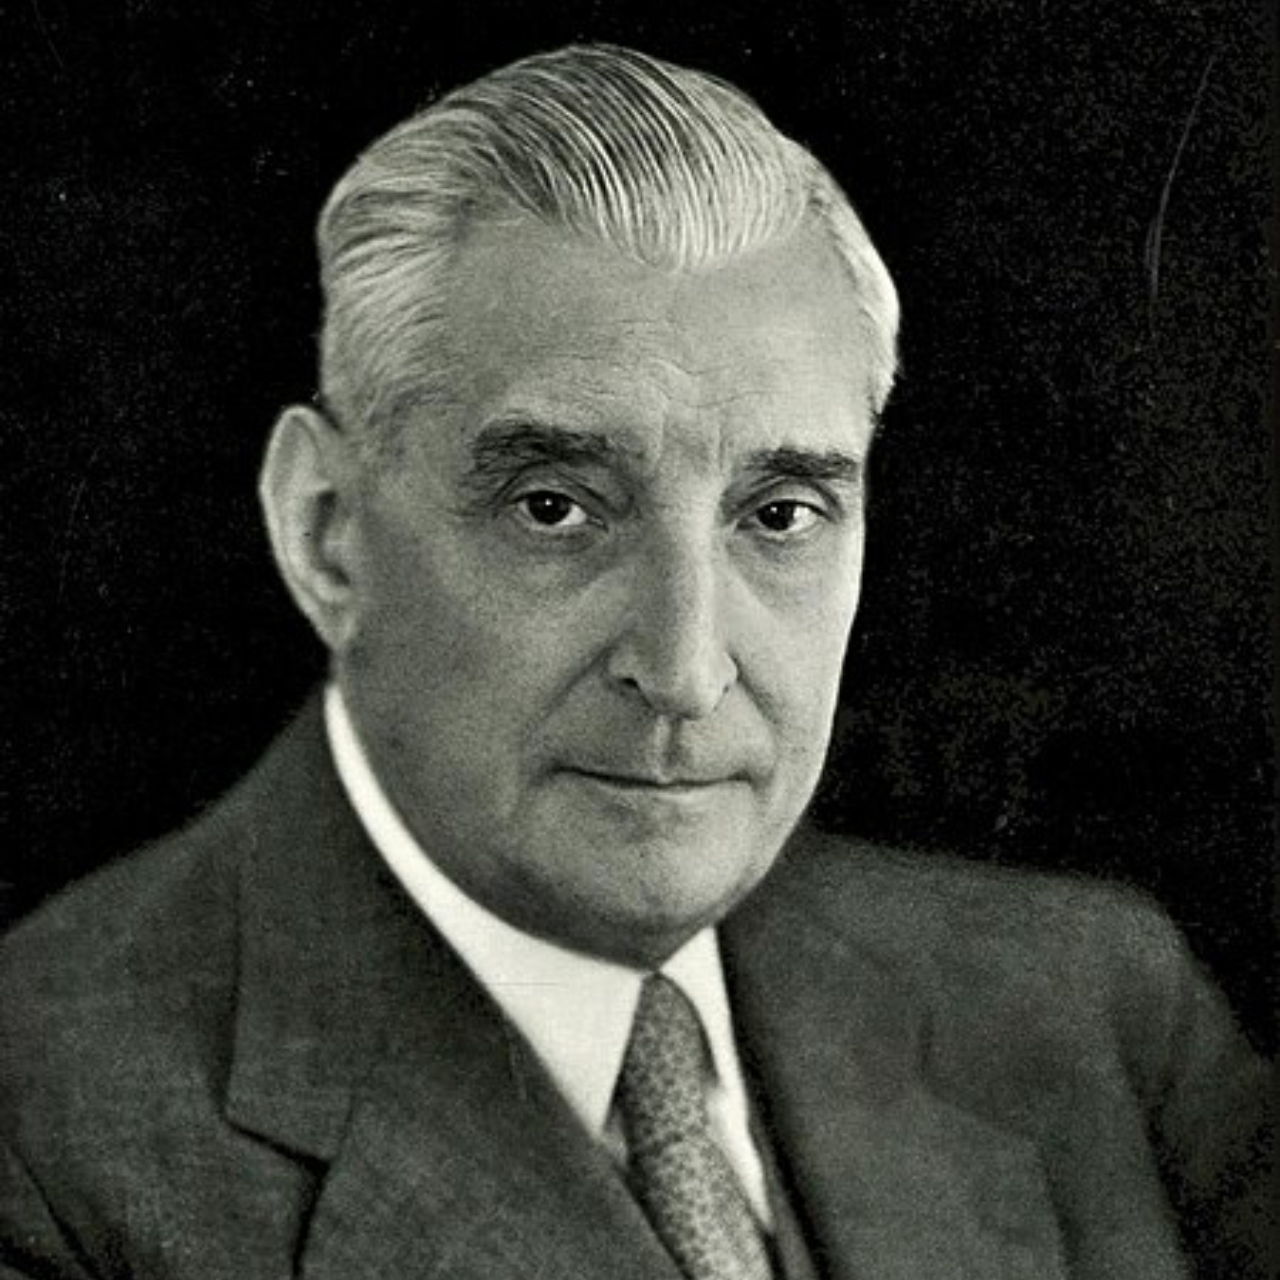 Fotografia de António de Oliveira Salazar, ex-ditador português